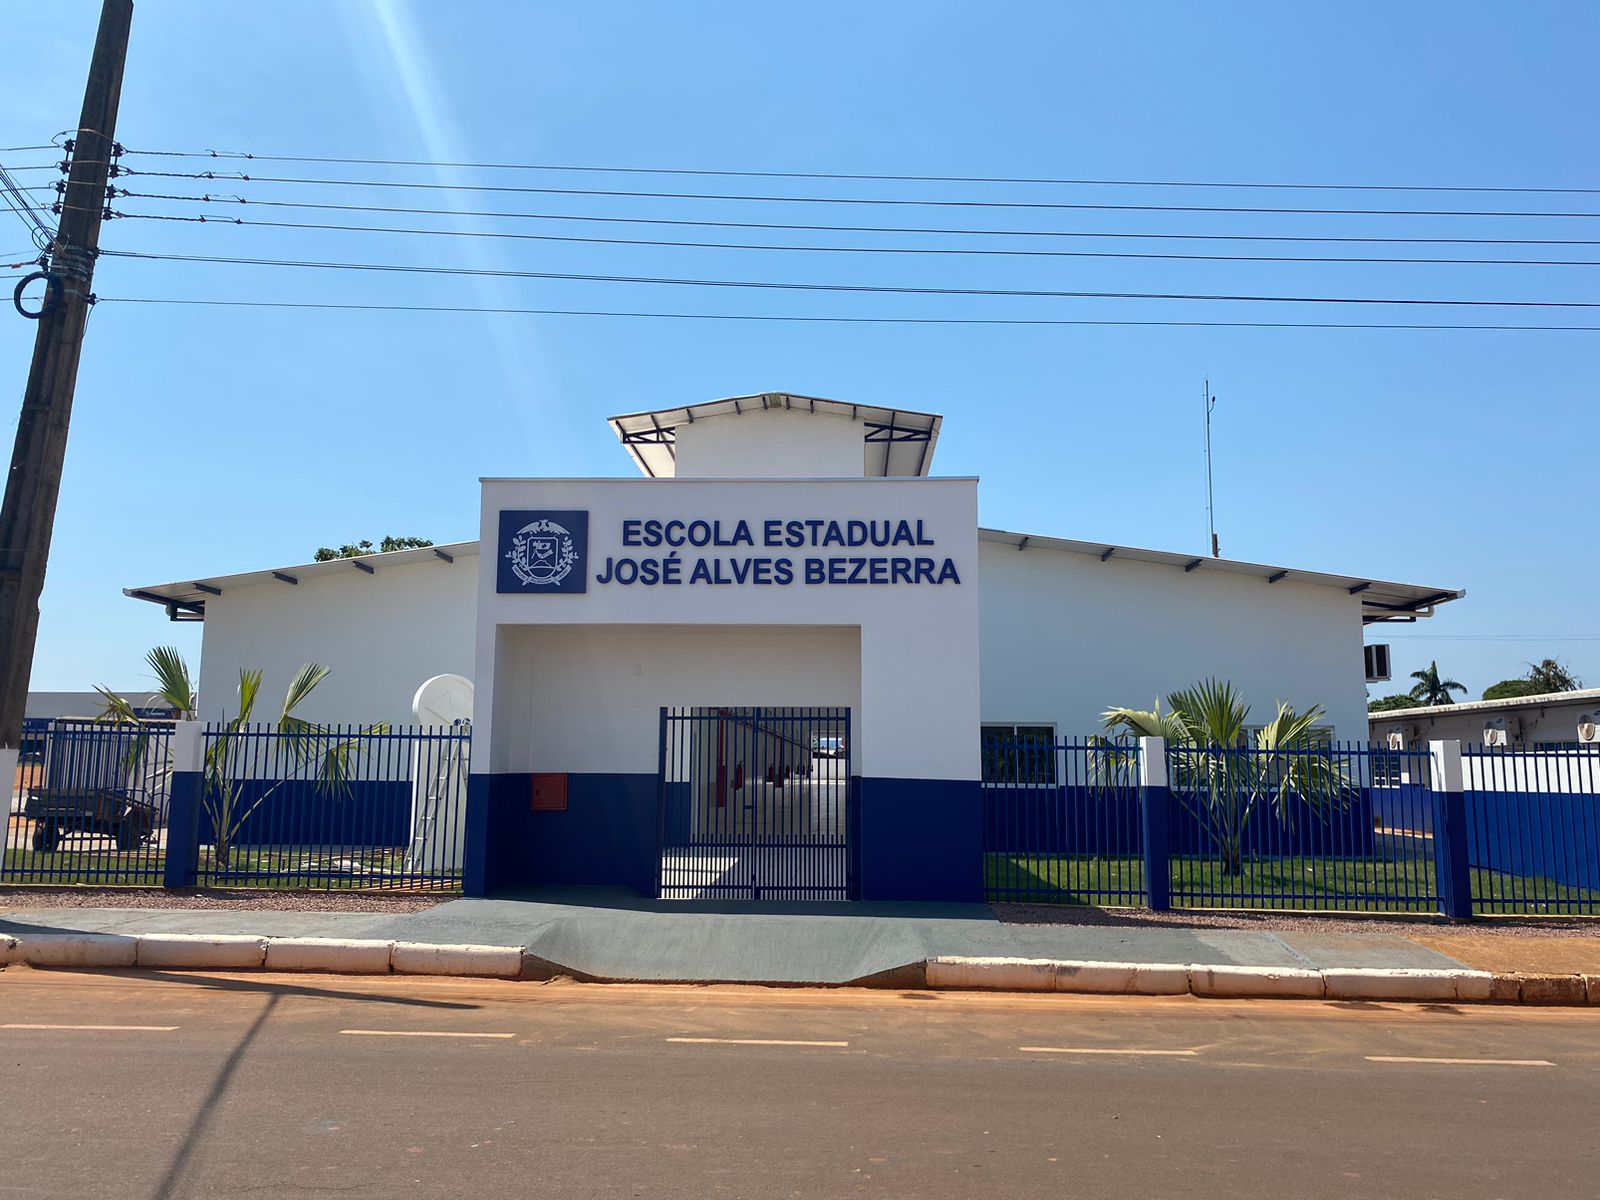 Nova escola estadual será entregue no domingo em município no Nortão; R$ 3,7 milhões